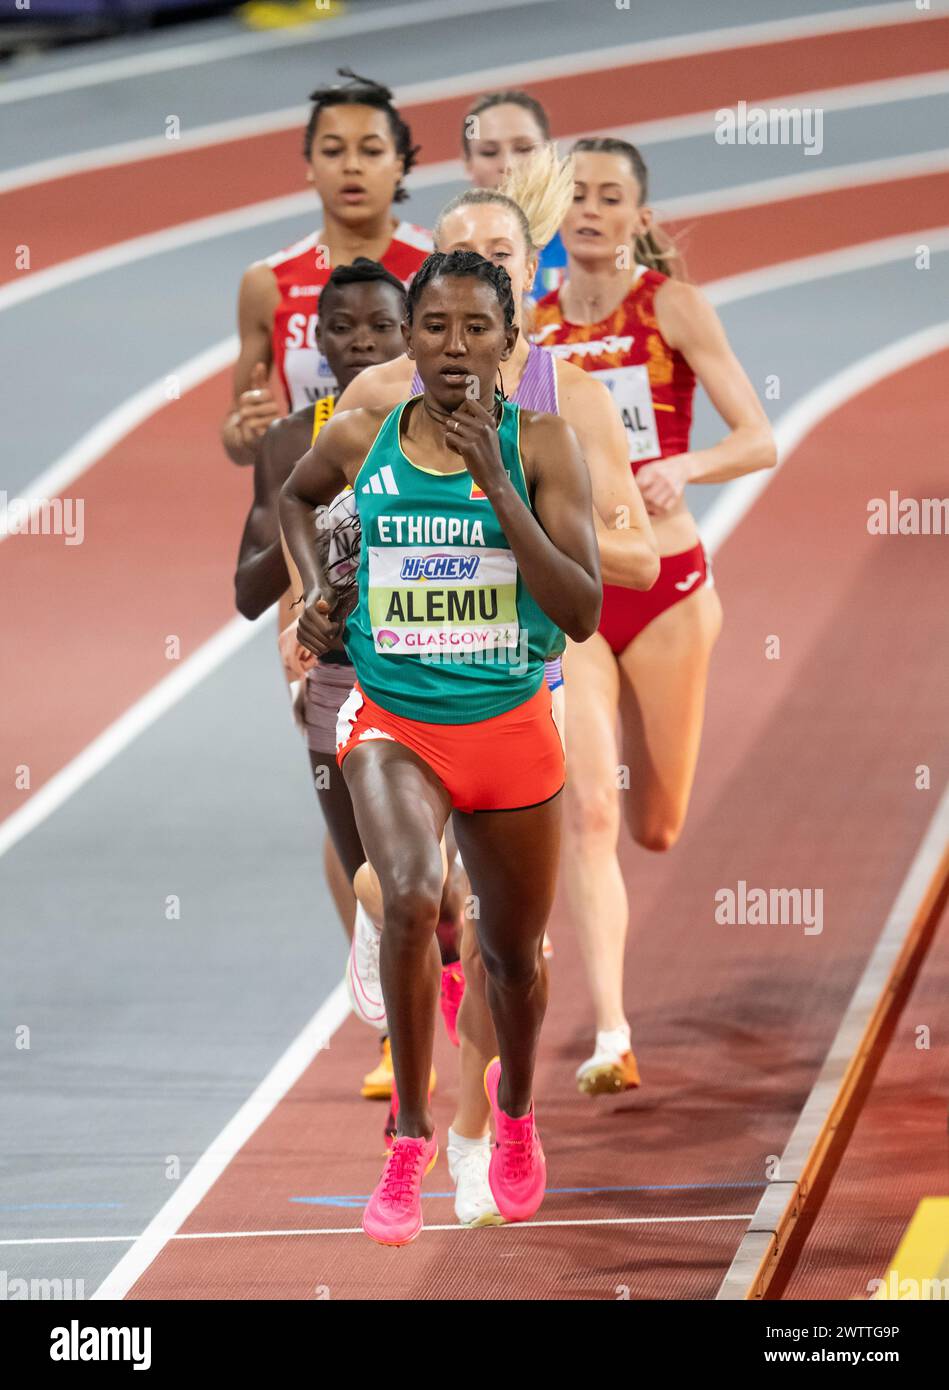 Habitam Alemu, Etiopia, gareggia nei 800 m di manches femminili ai Campionati del mondo di atletica leggera indoor, Emirates Arena, Glasgow, Scozia, Regno Unito. 1a/3a Foto Stock